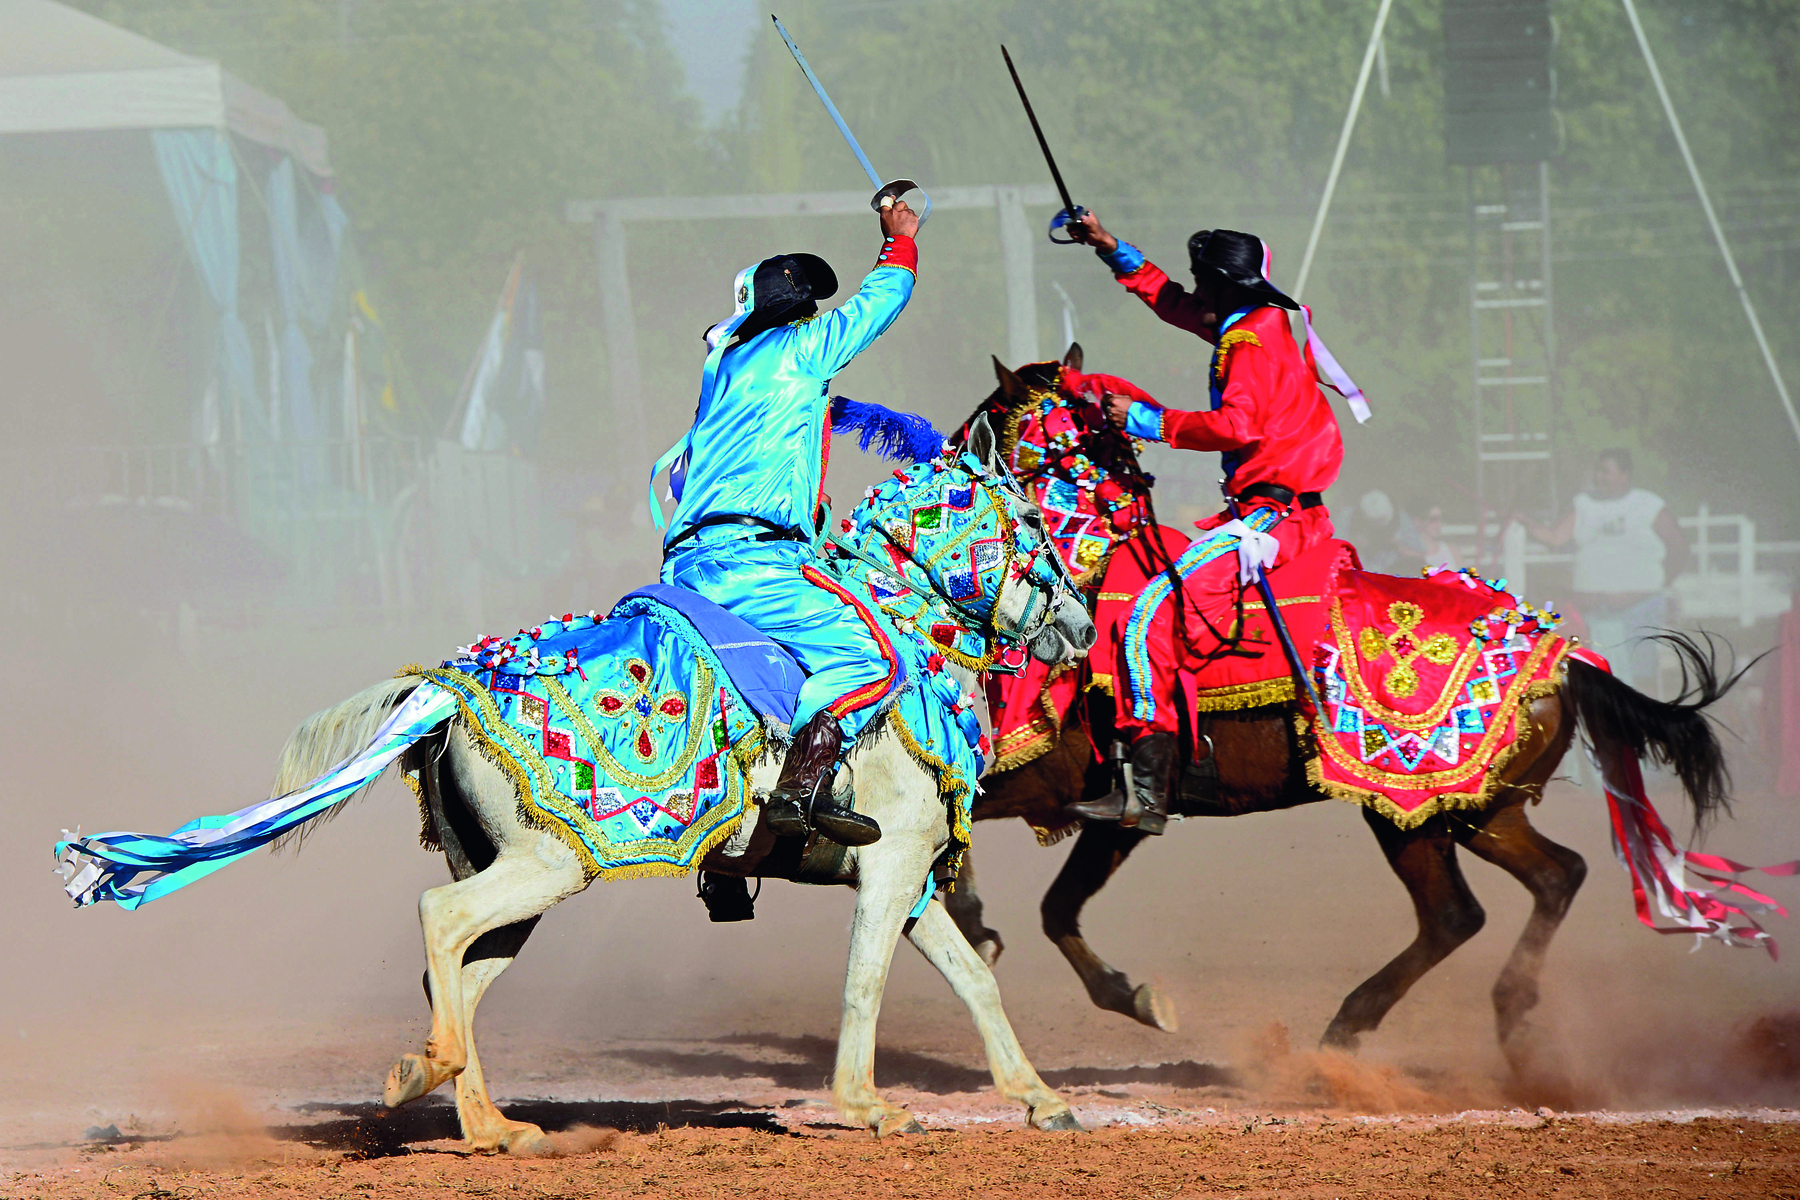 Fotografia. Dois homens montando cavalos, segurando espadas esticadas para cima. O homem da esquerda veste camisa e calça azuis, o homem da direita veste camisa e calça vermelhas. Os cavalos tem o dorso coberto por capas na mesma cor do traje de seus cavaleiros.